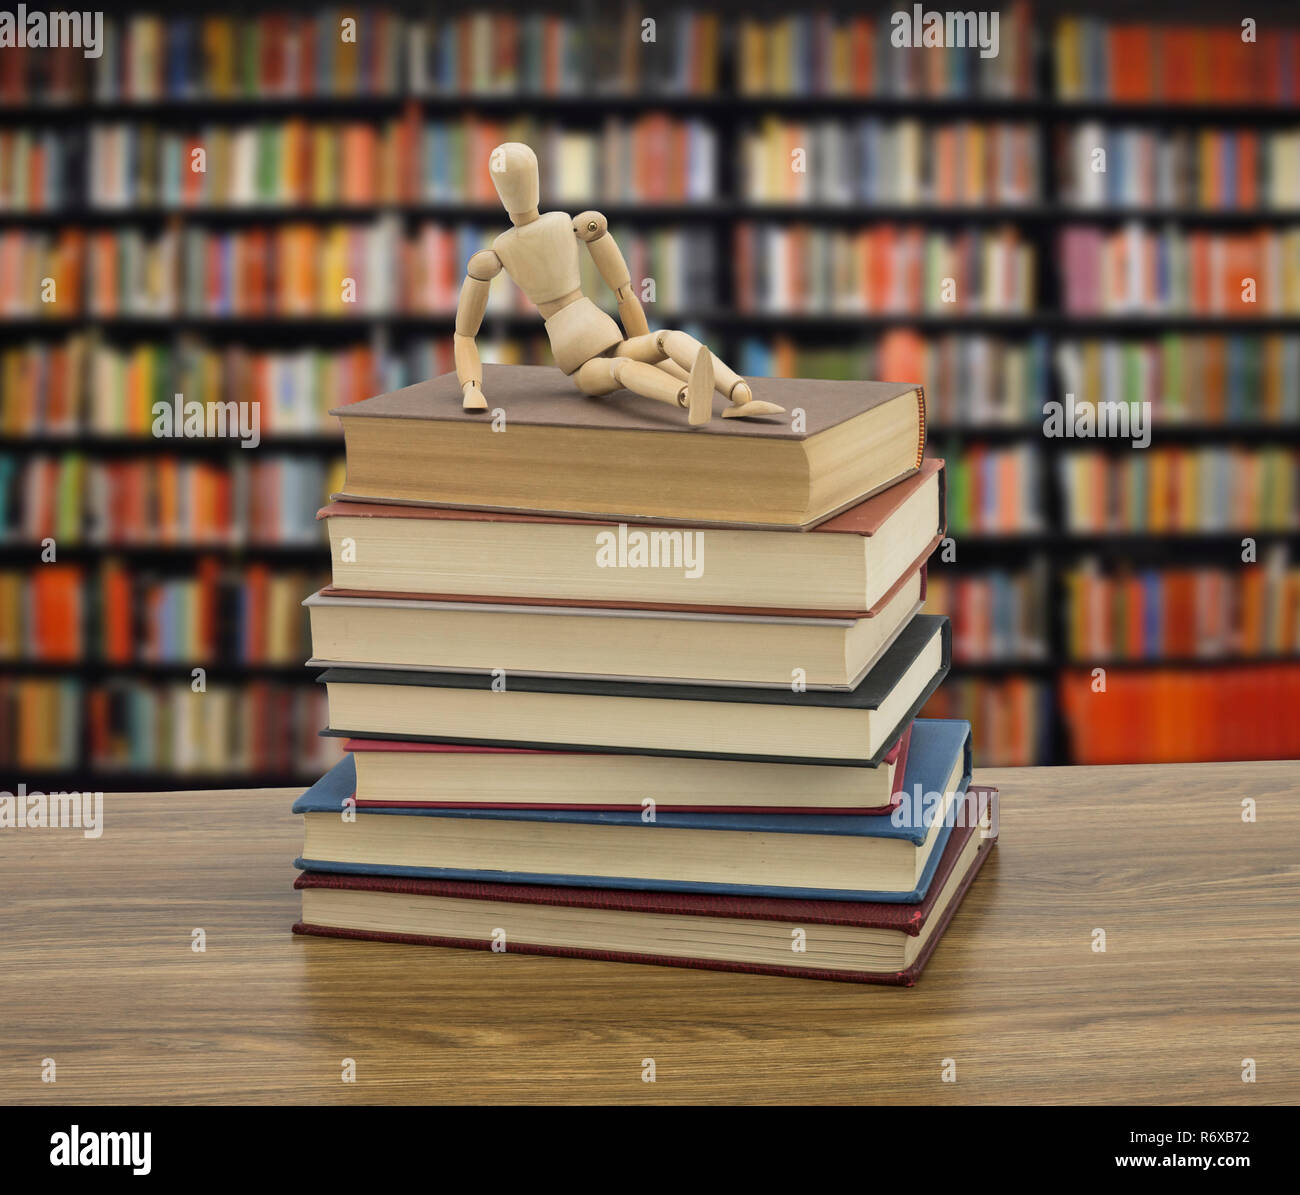 Il burattino di legno su alcuni libri in una libreria, immagine concettuale Foto Stock